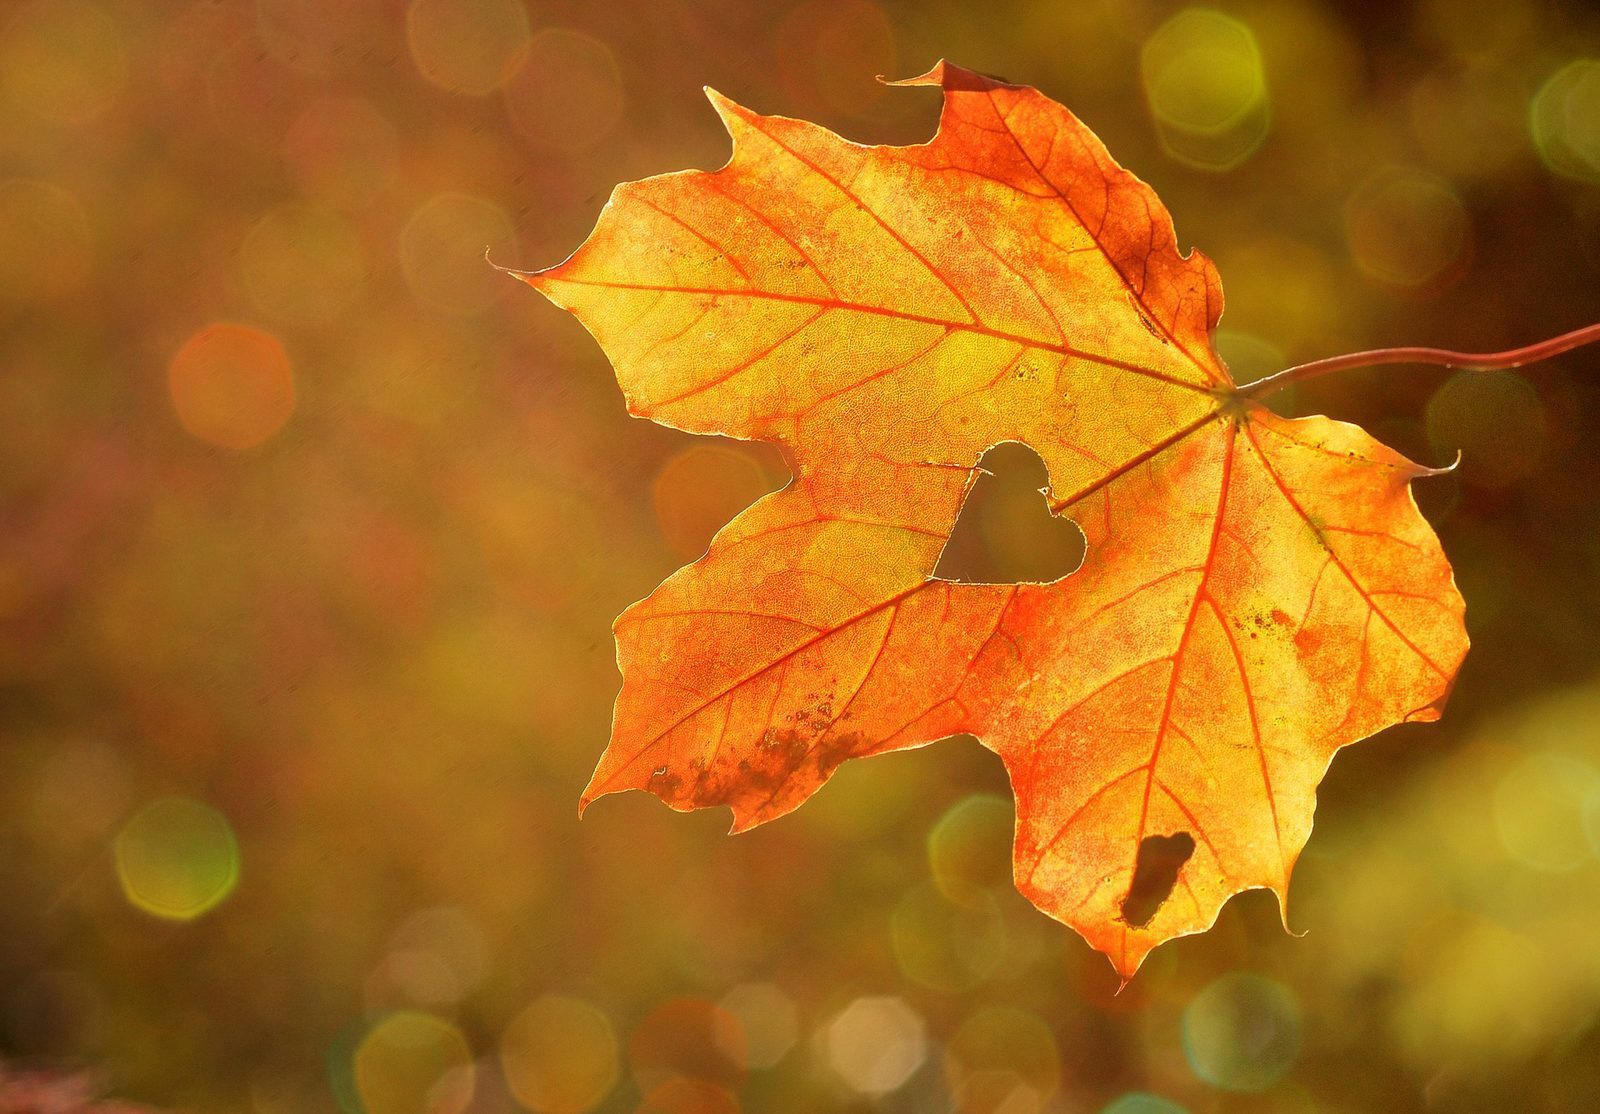 Ackersate-herfst-kleur-goud-flexa-colorstore-schilderen-verf-paint-gold